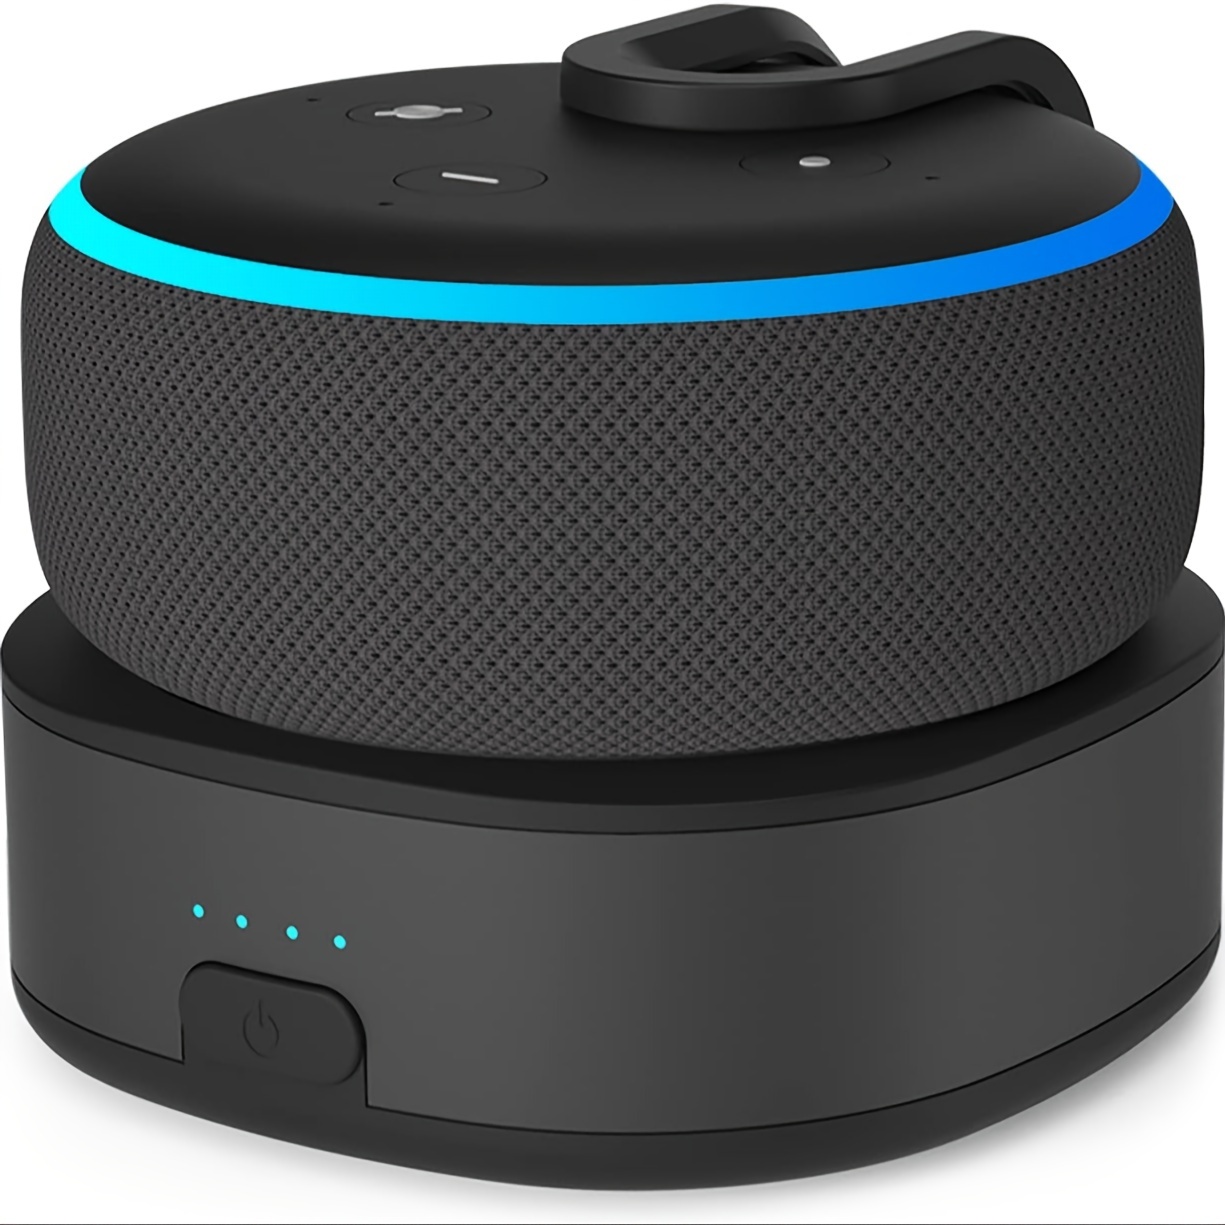 L'enceinte  Echo (3ème génération) chute au prix de l'Echo Dot